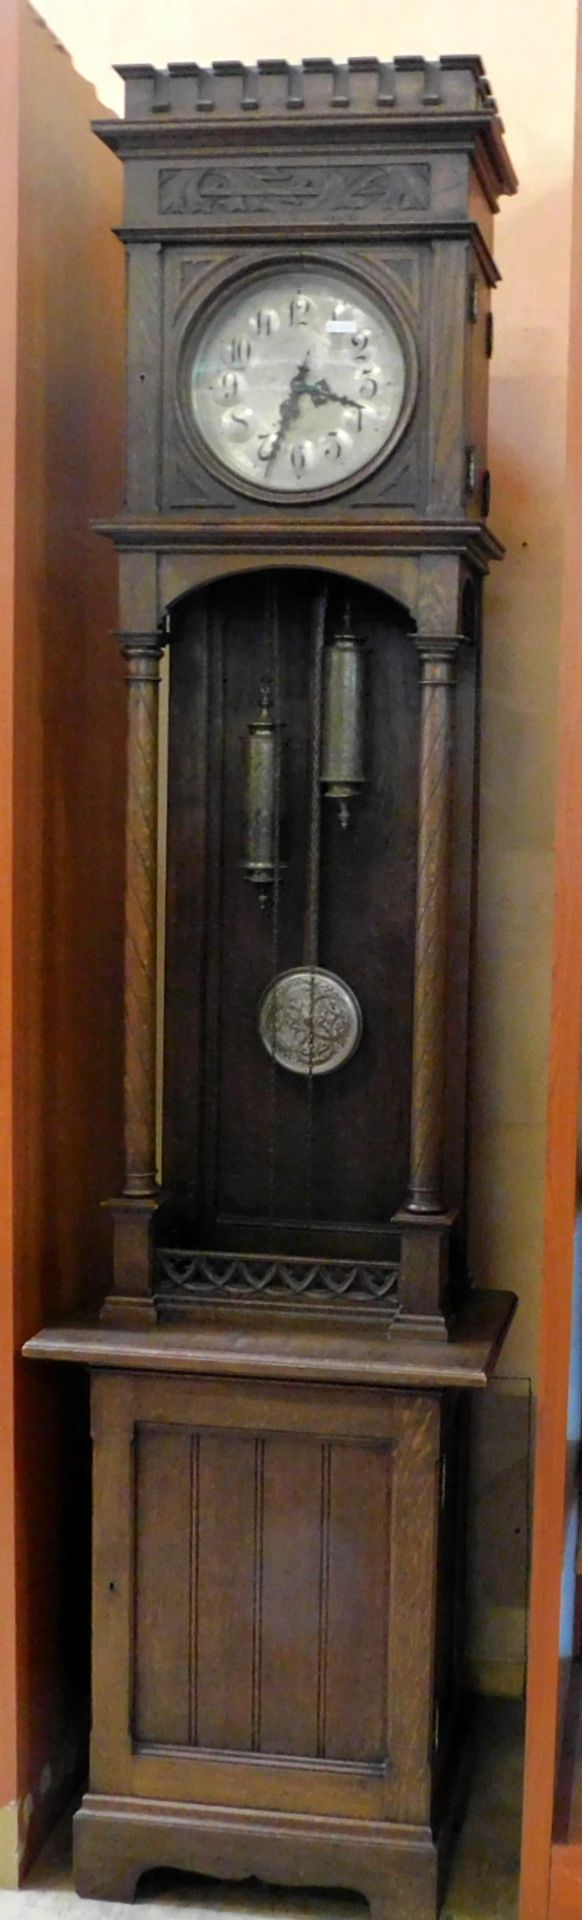 Standuhr, Uhrwerk Lenzkirch, Eiche, Jugendstil, deutsch um 1900, H:235 cm